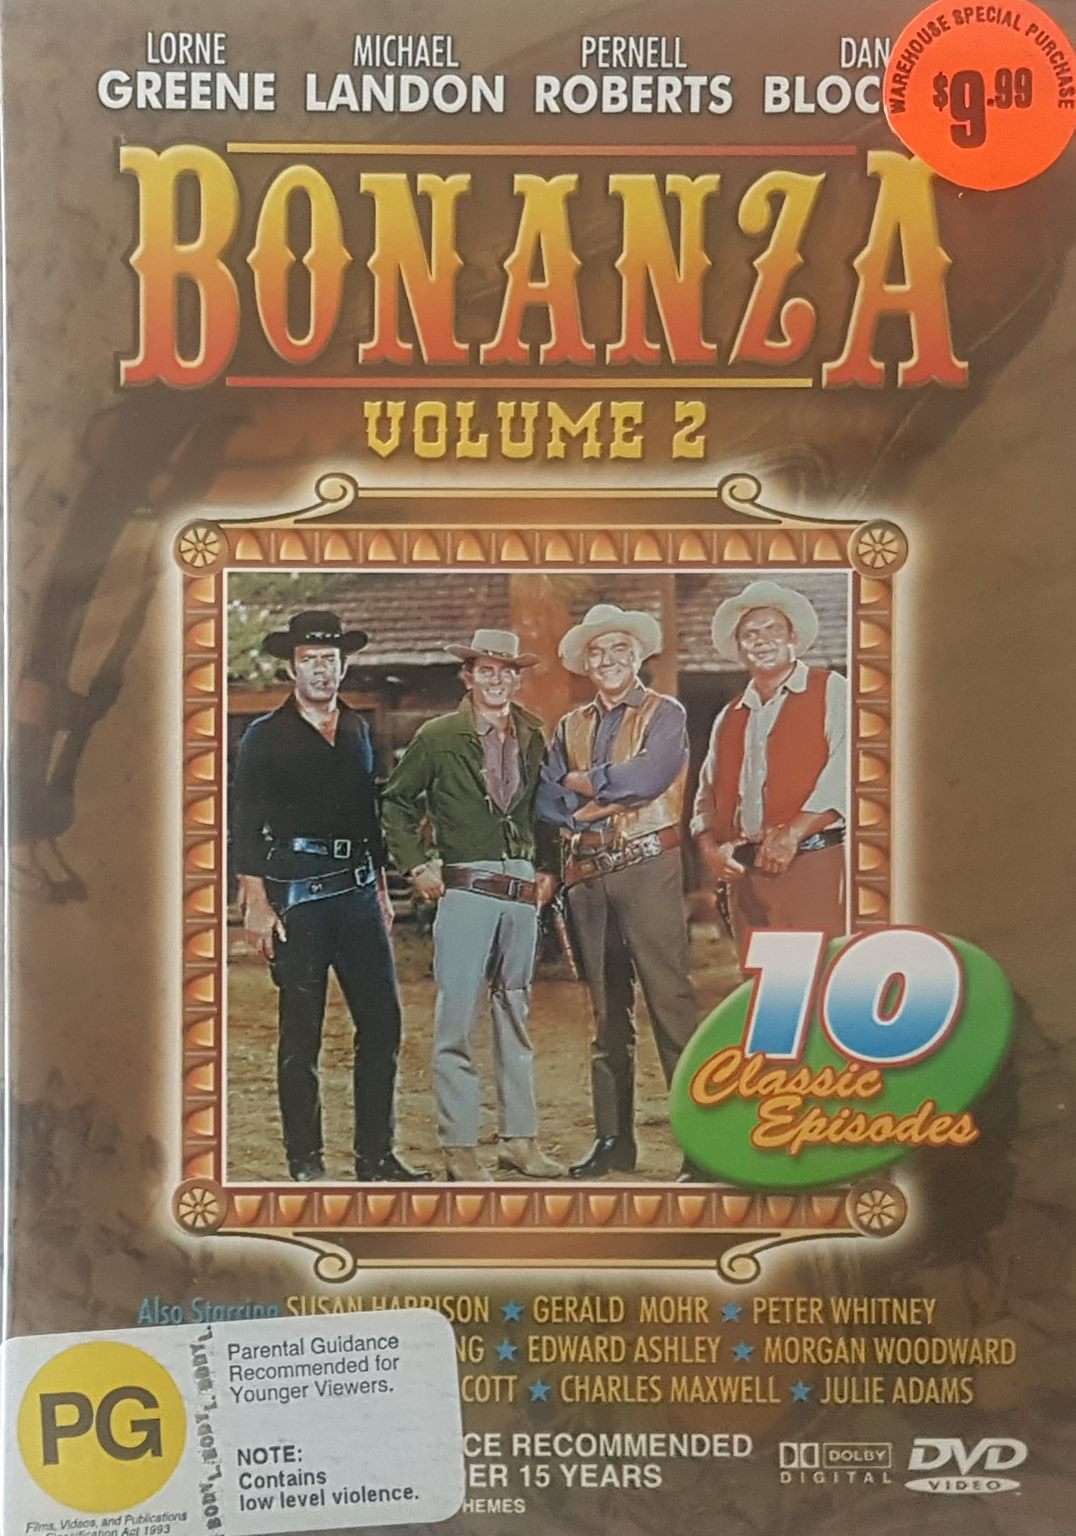 Bonanza Vol. 2 10 Episodes